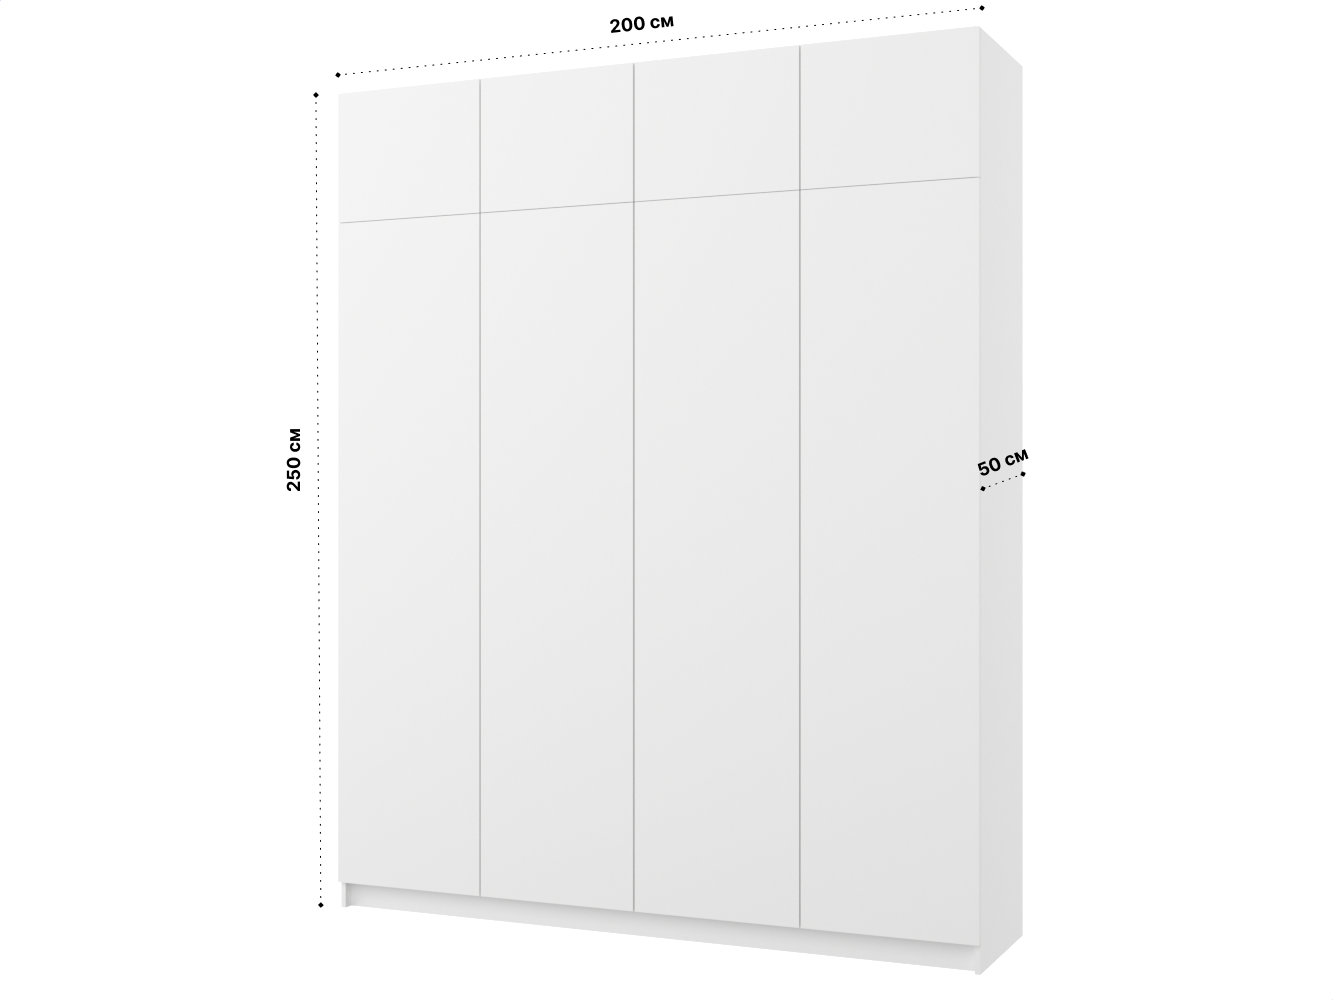 Распашной шкаф Пакс Фардал 130 white ИКЕА (IKEA) изображение товара